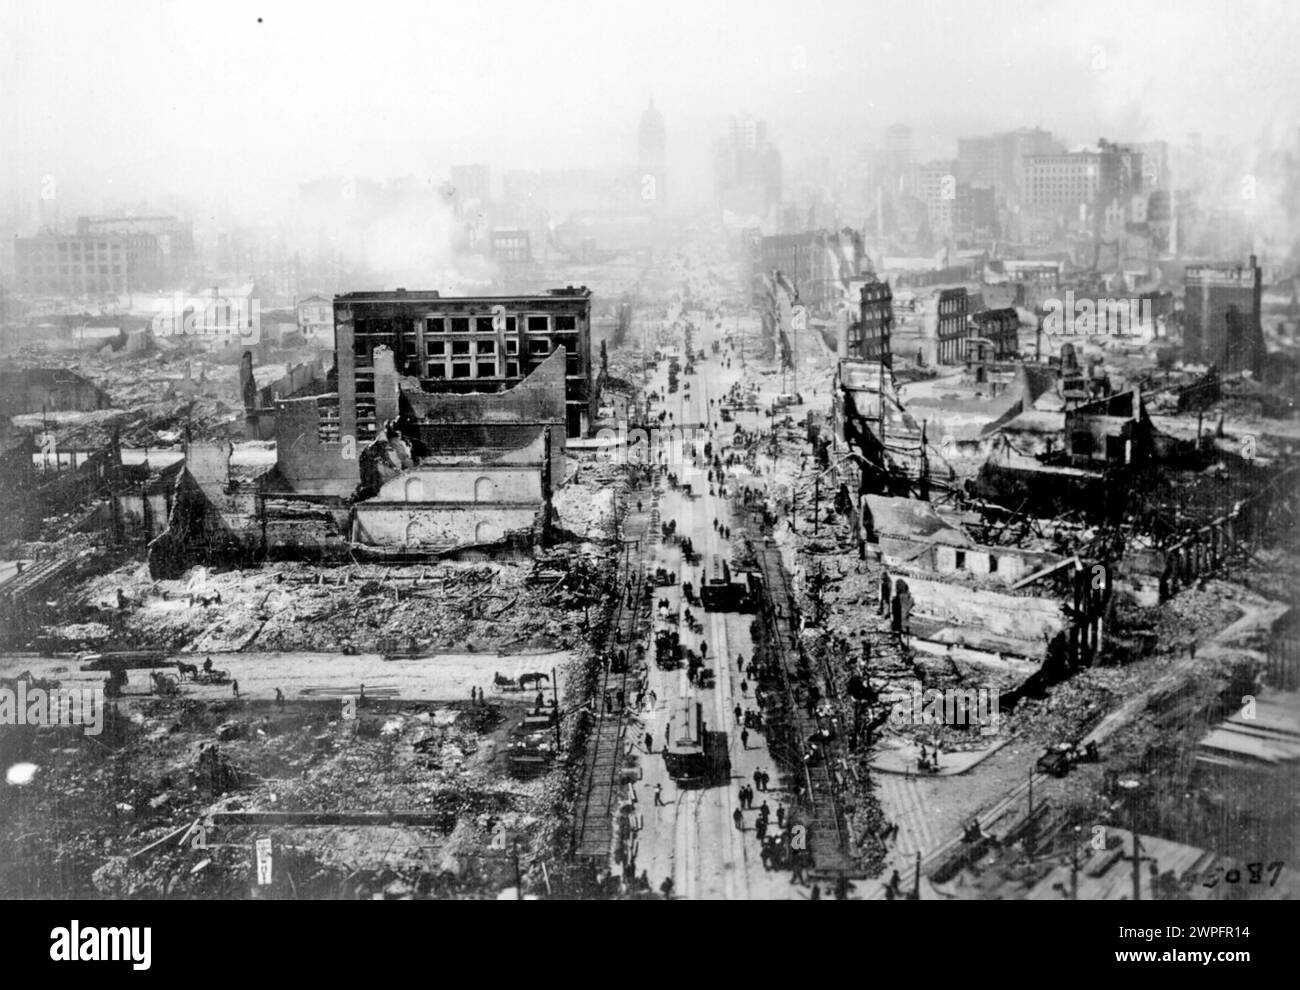 Terremoto di SAN FRANCISCO 1906. Foto scattata alcuni giorni prima del terremoto del 19 aprile 1906 e dei successivi incendi. Foto Stock